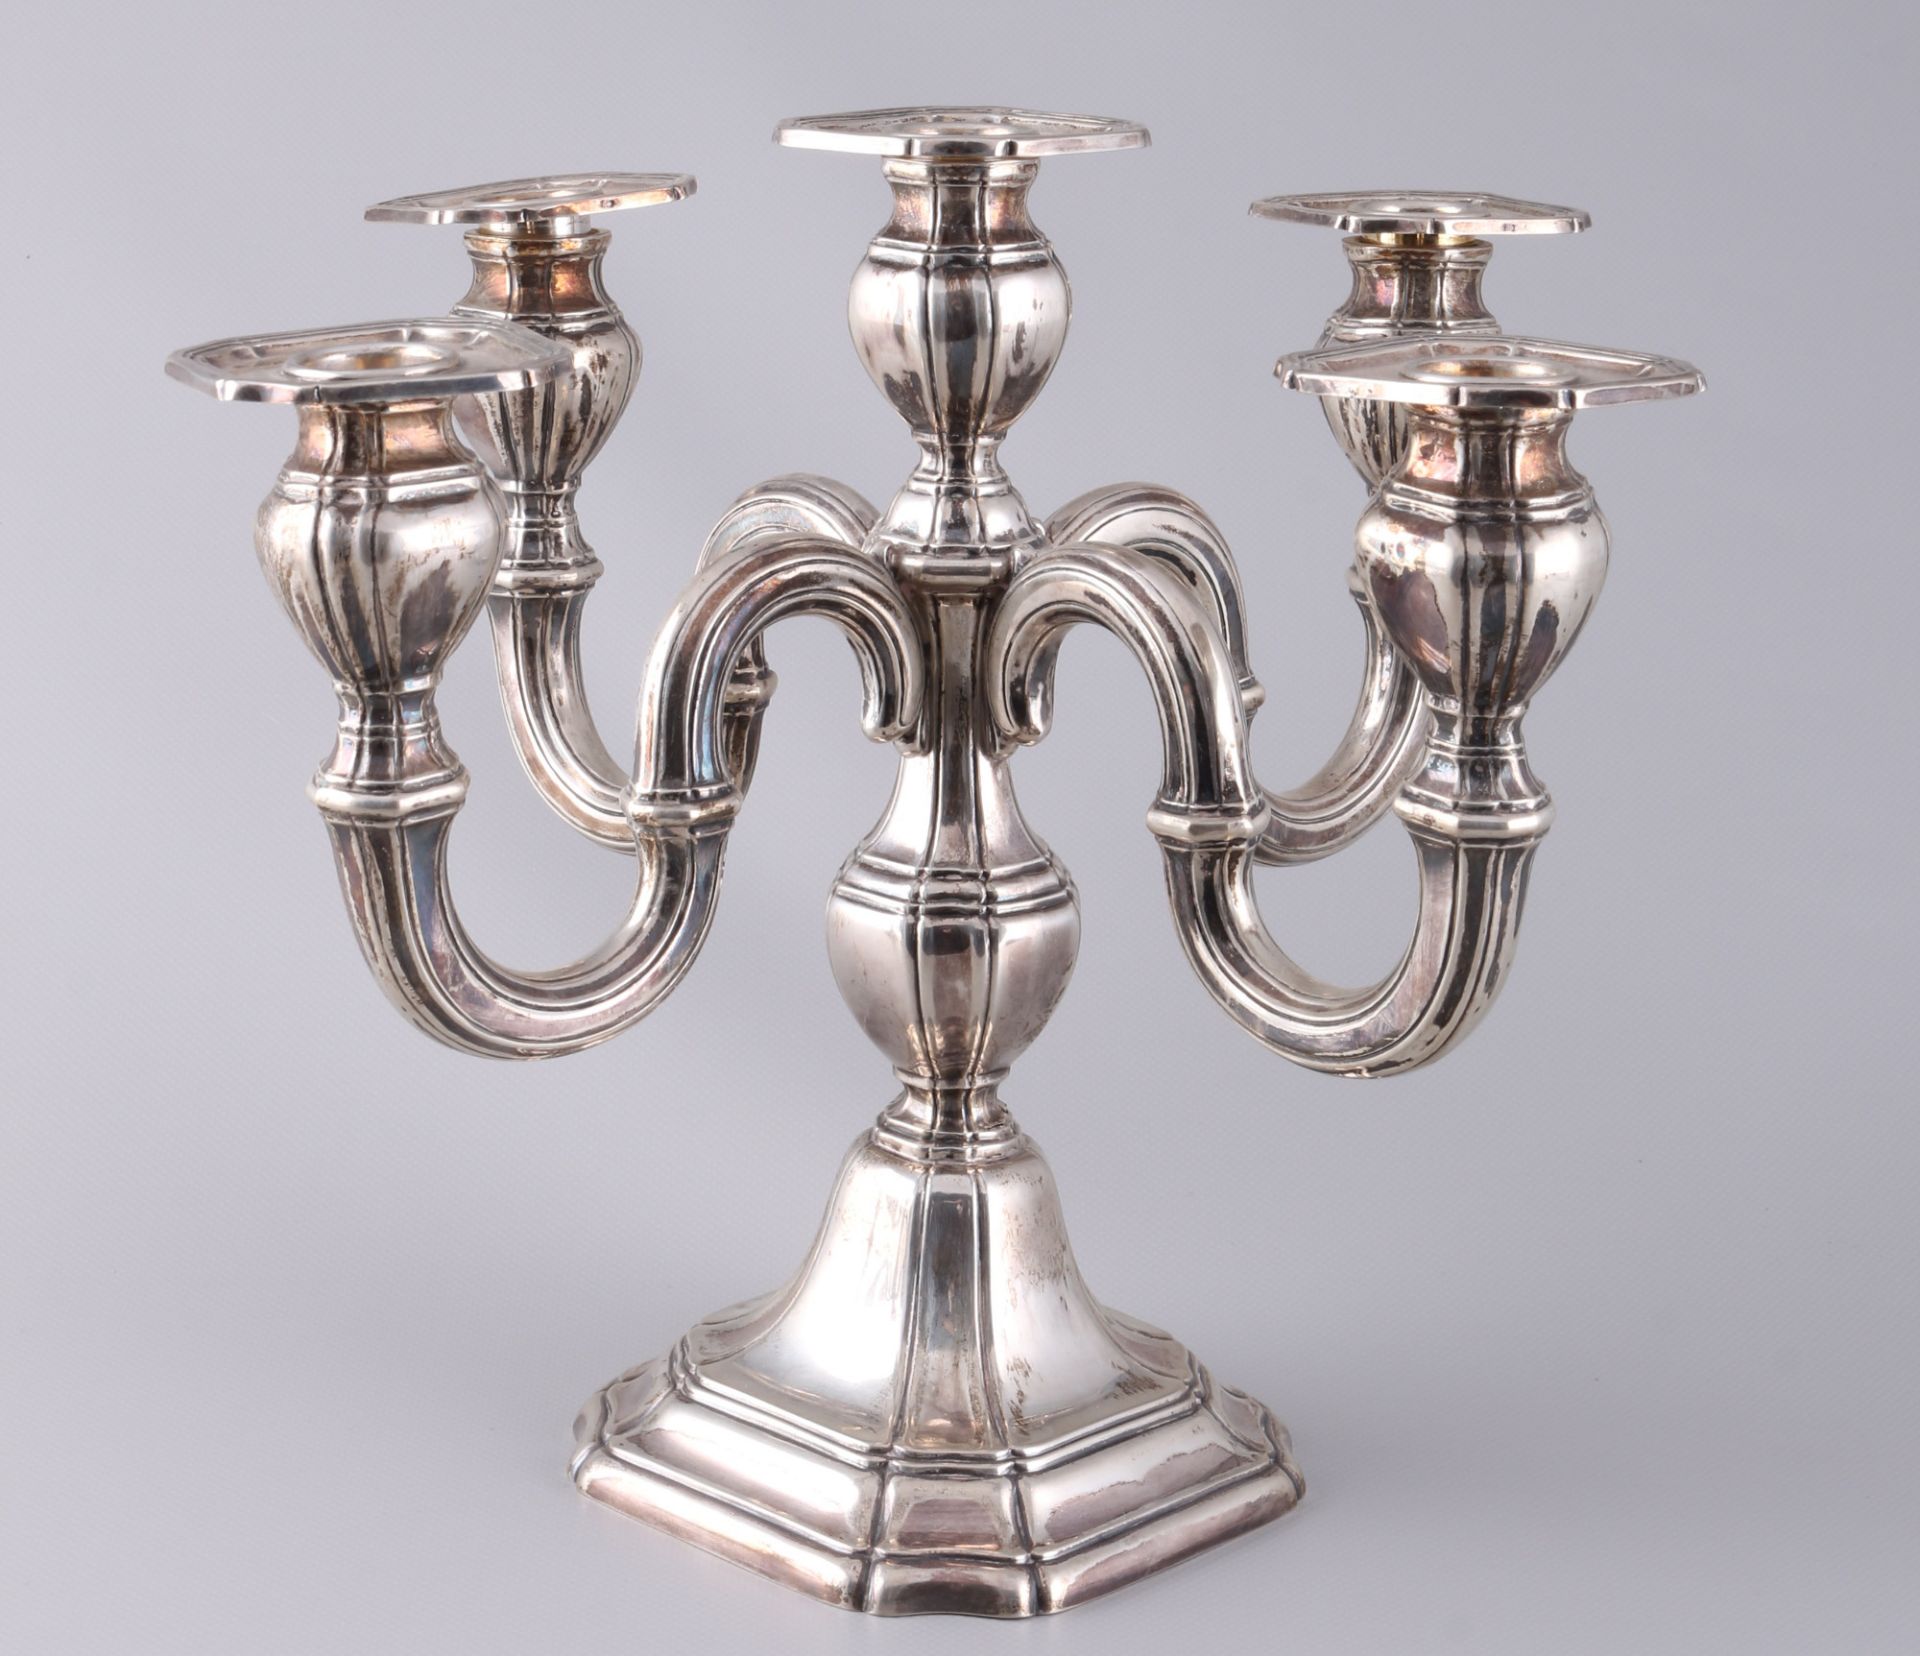 800 - 835 silver 3 candlesticks, included Grimminger & Gebr. Deyhle, Silber Kerzenleuchter - Image 2 of 6